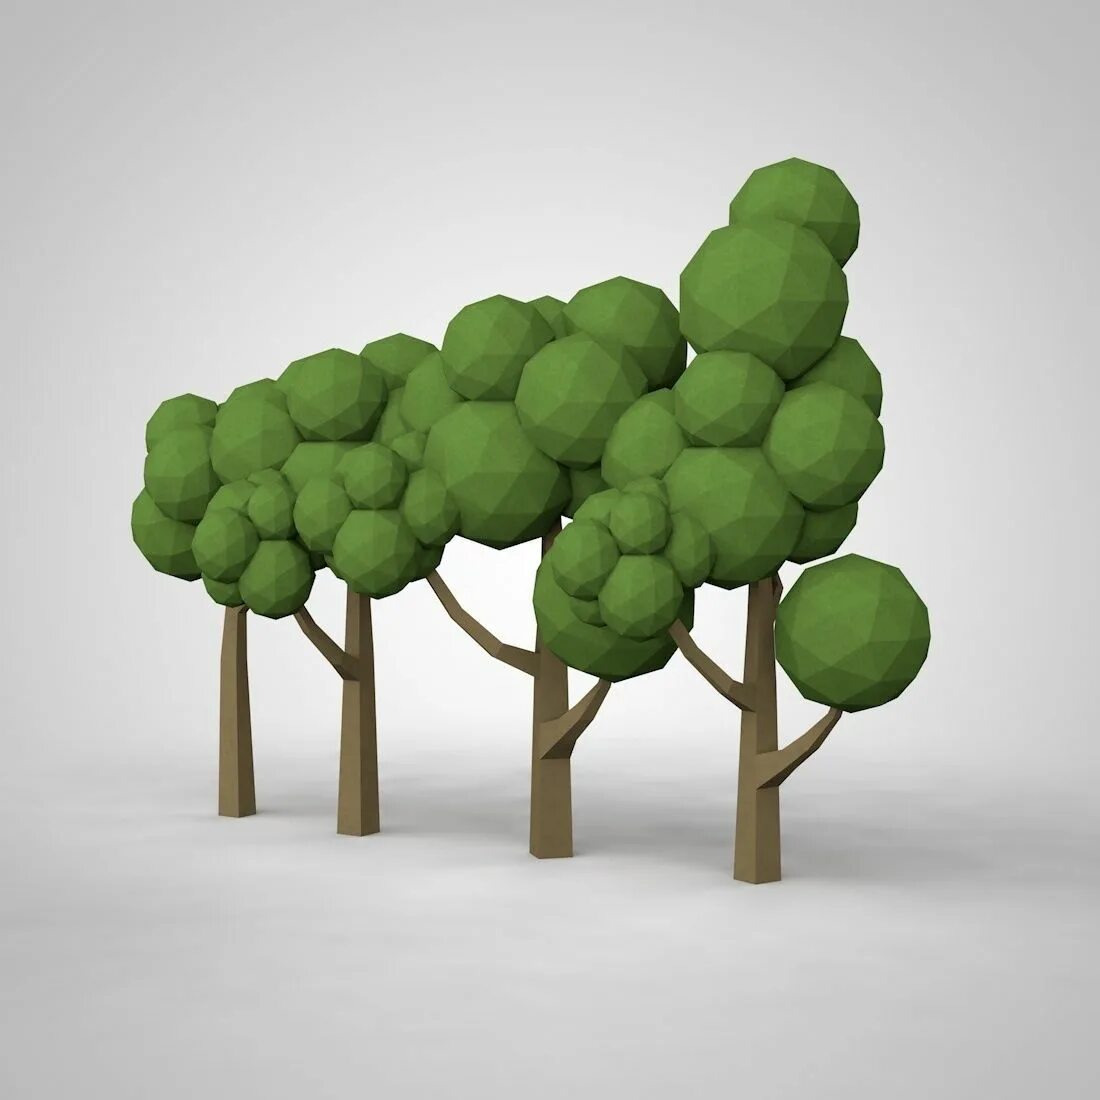 Дерево в 3 d. Низкополигональные деревья 3ds Max. Лоу Поли дерево 3ds Max. Деревья в 3ds Max. Деревья для моделирования.